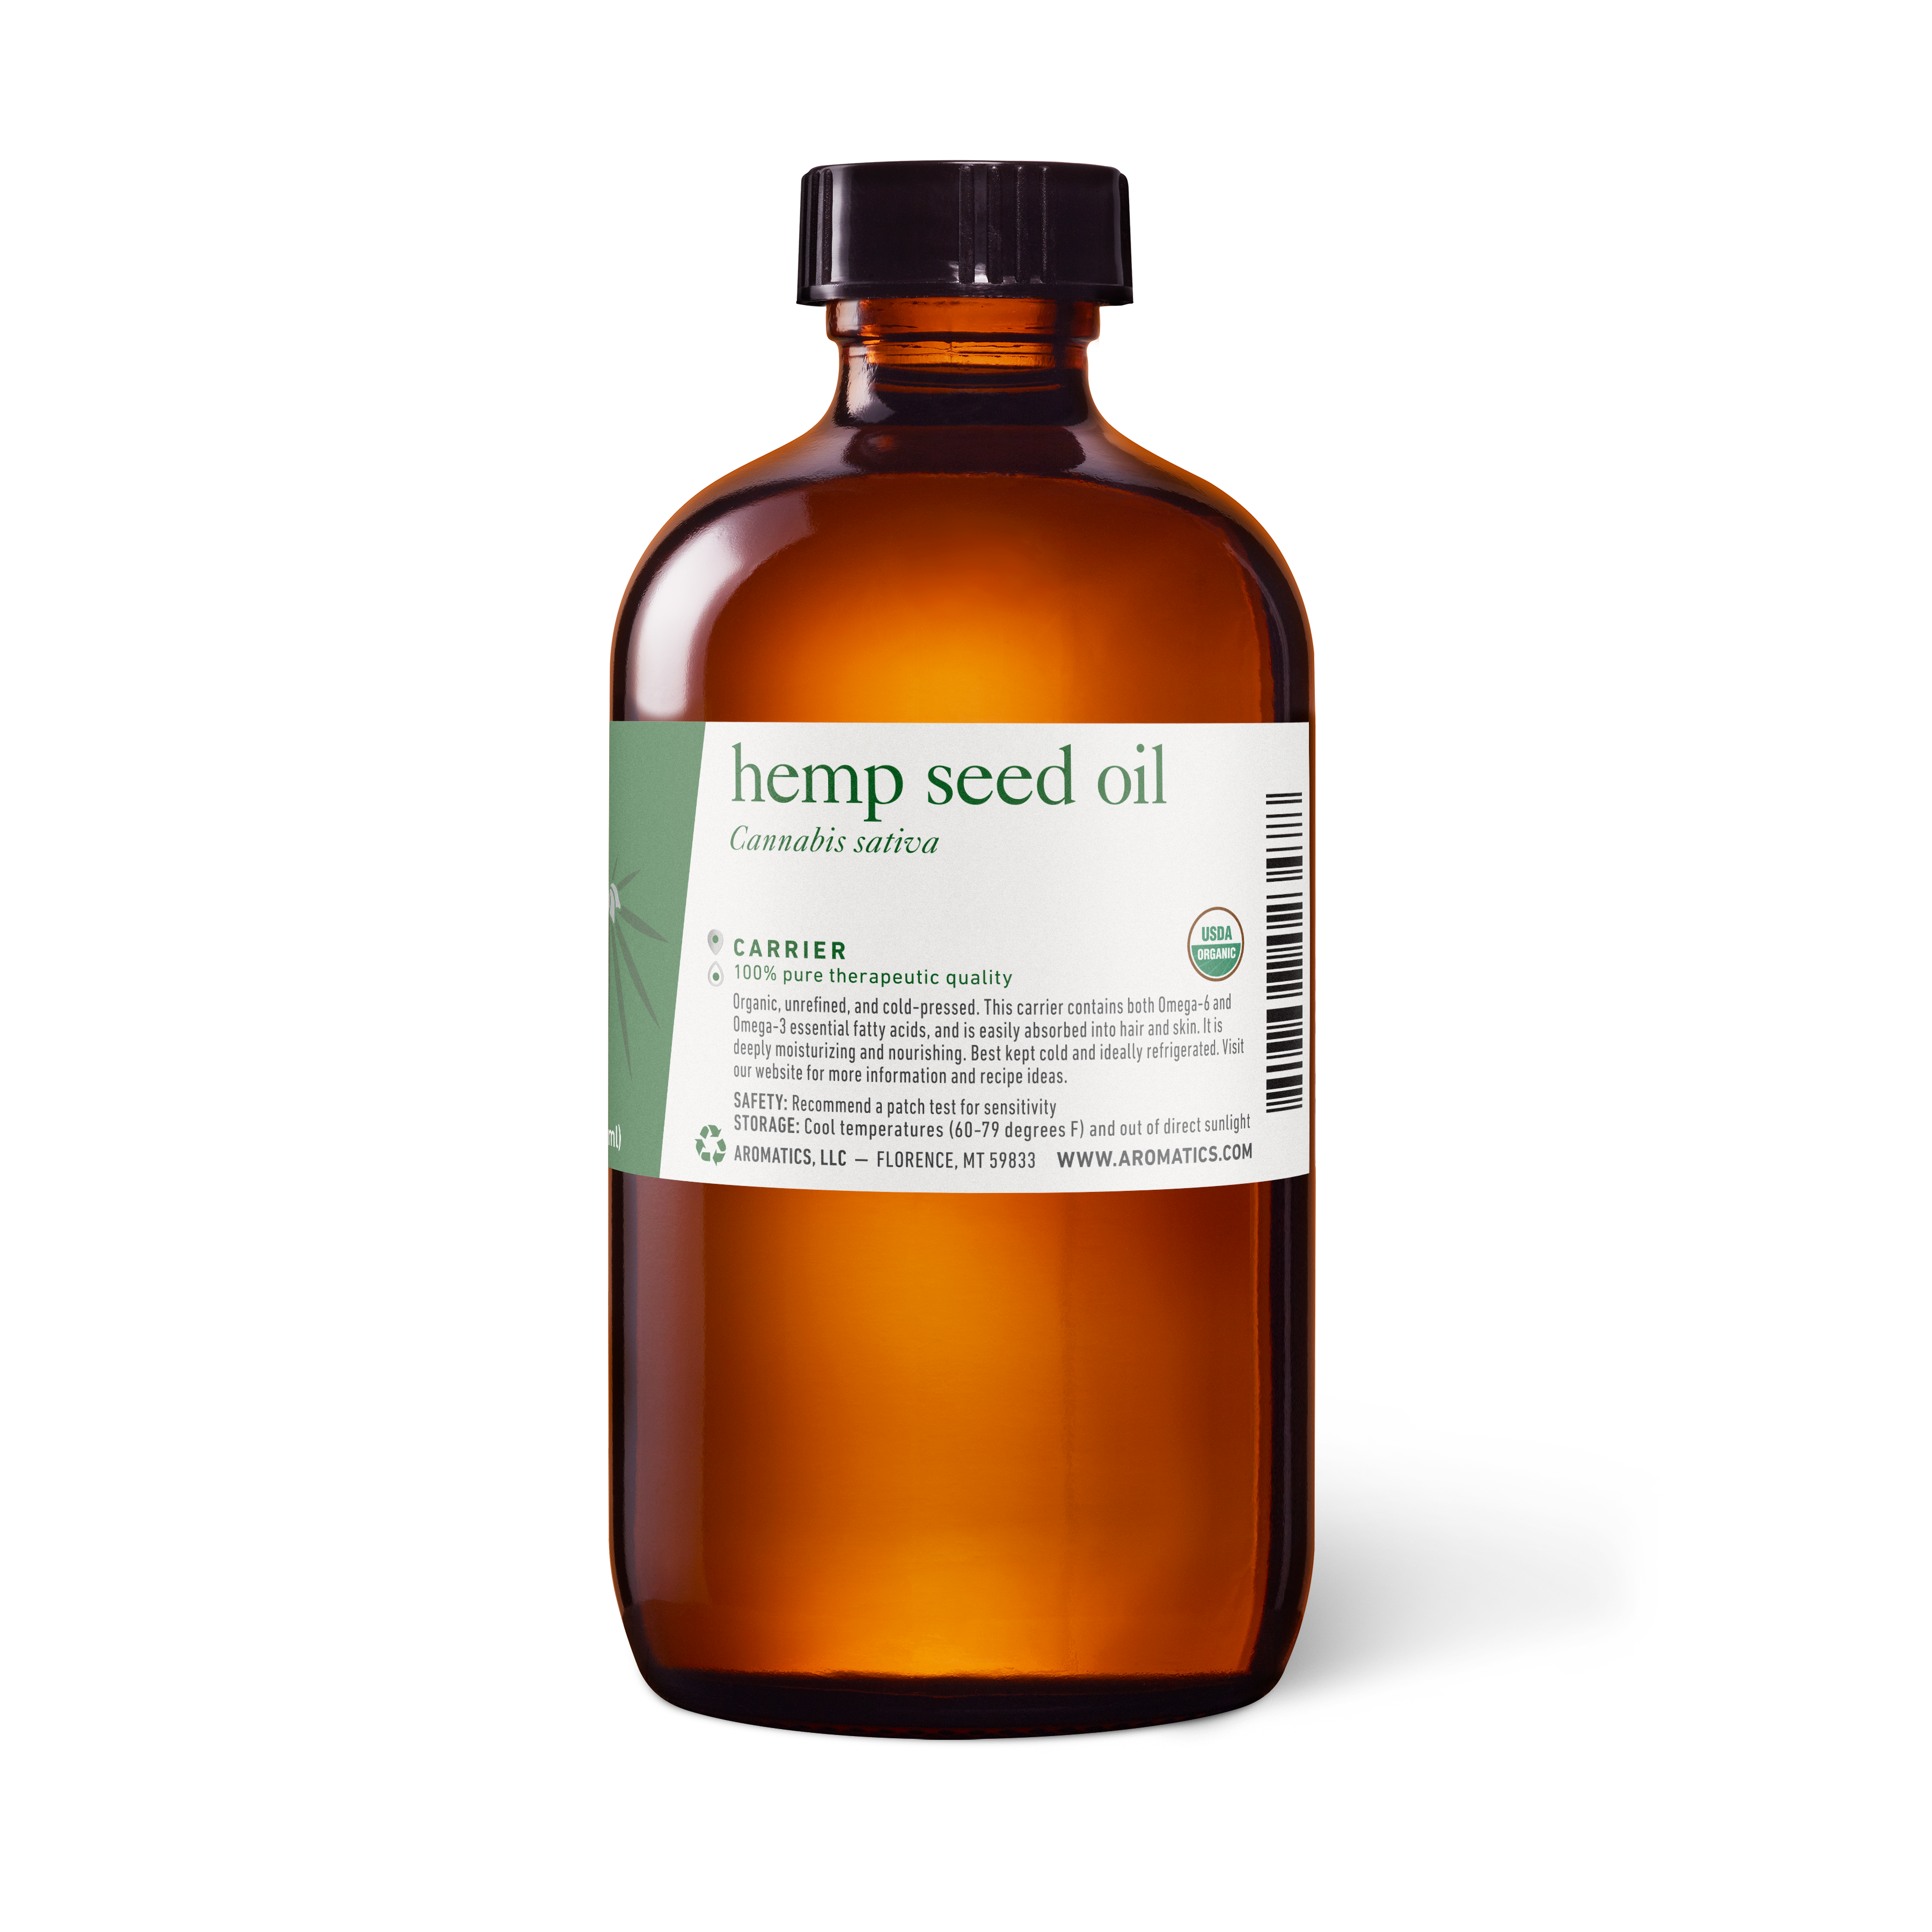 SEED-06: Industrial Hemp Seed Oil